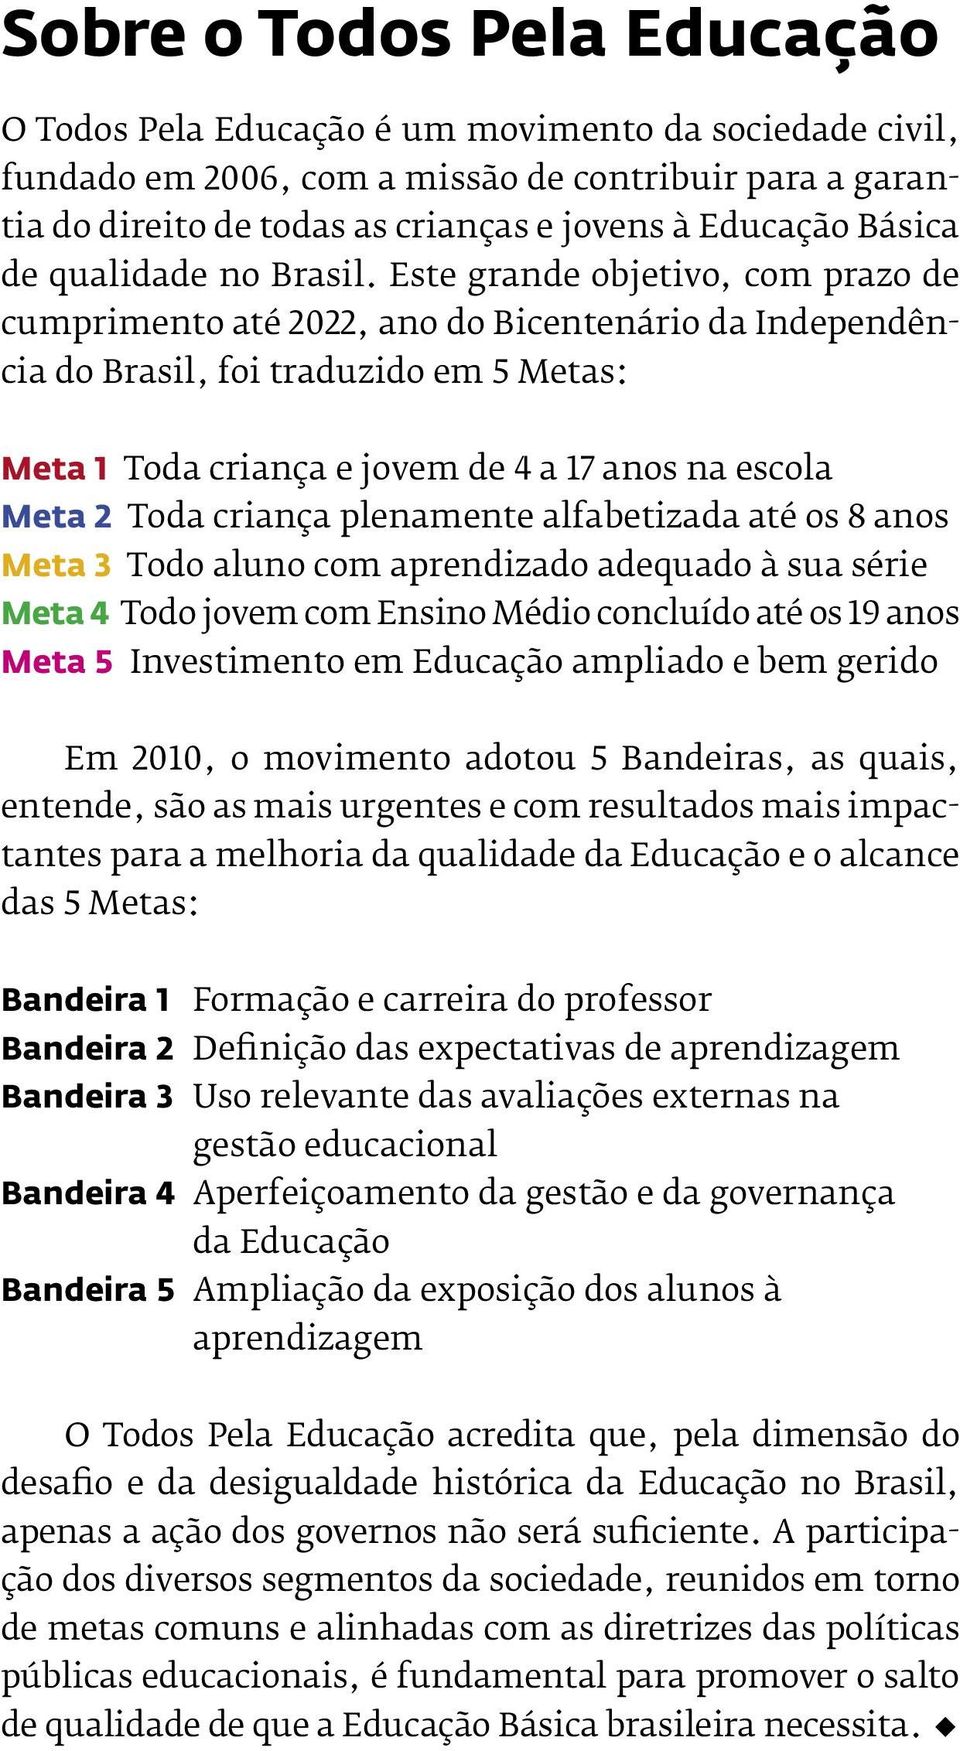 Este grande objetivo, com prazo de cumprimento até 2022, ano do Bicentenário da Independência do Brasil, foi traduzido em 5 Metas: Meta 1 Toda criança e jovem de 4 a 17 anos na escola Meta 2 Toda